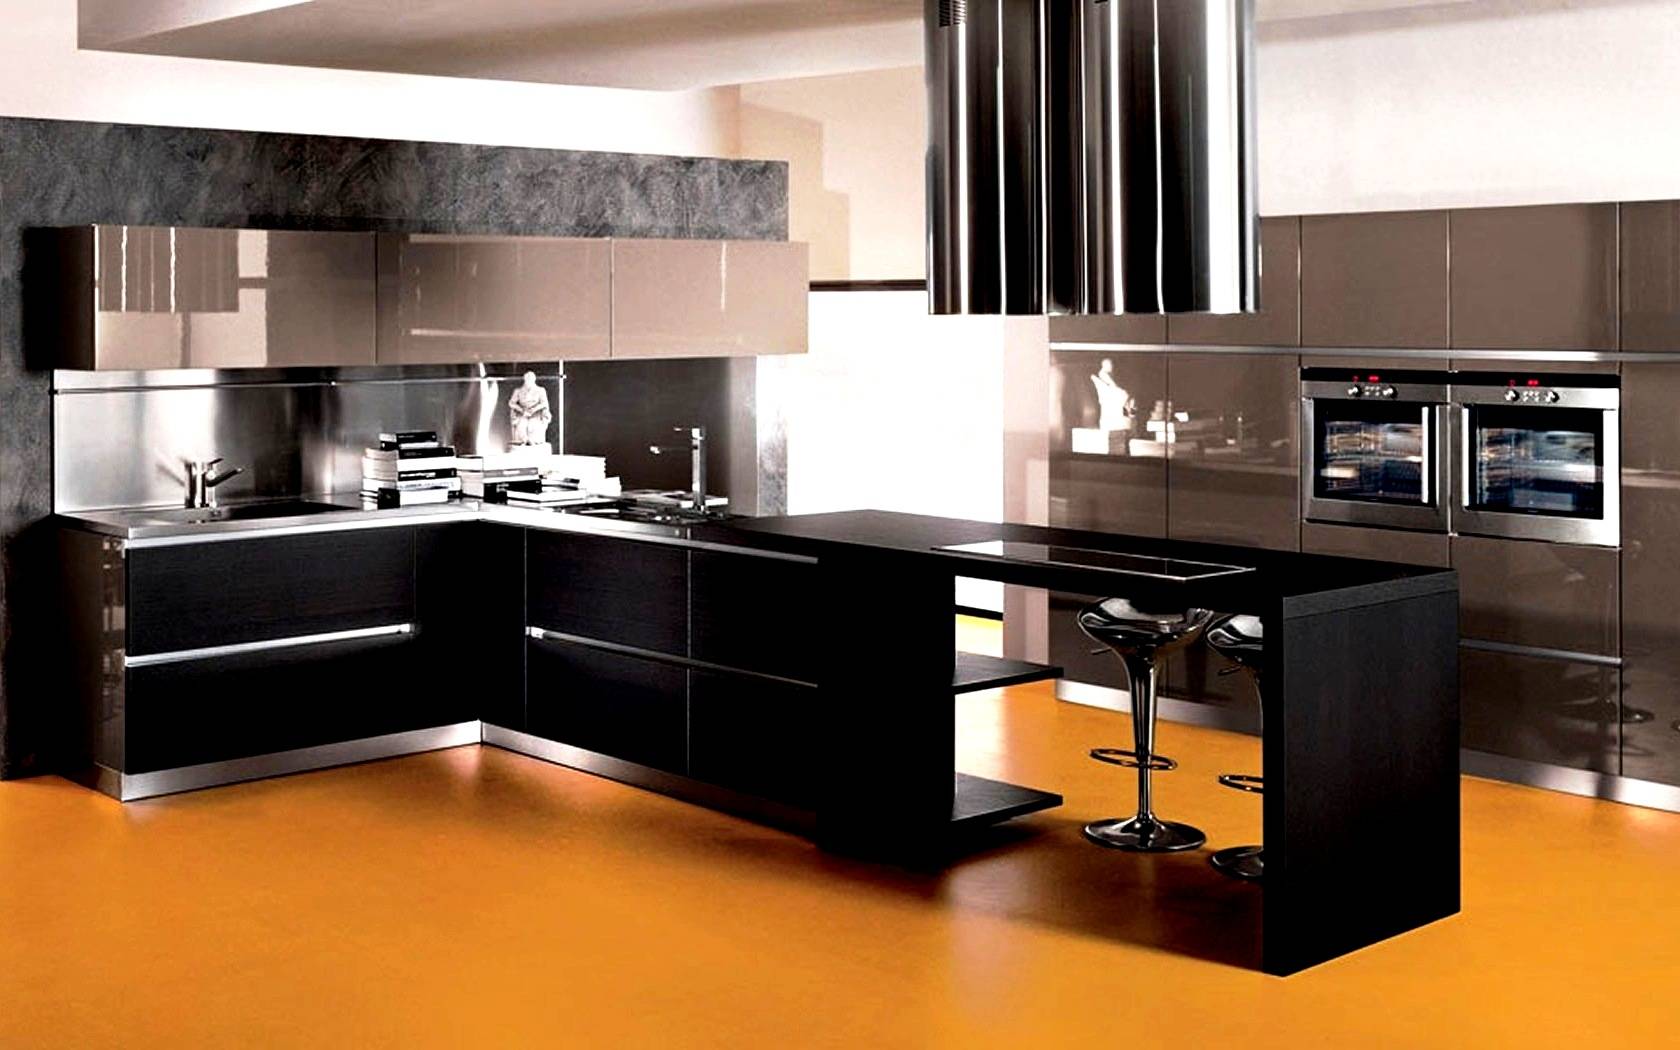  kitchen designs modular